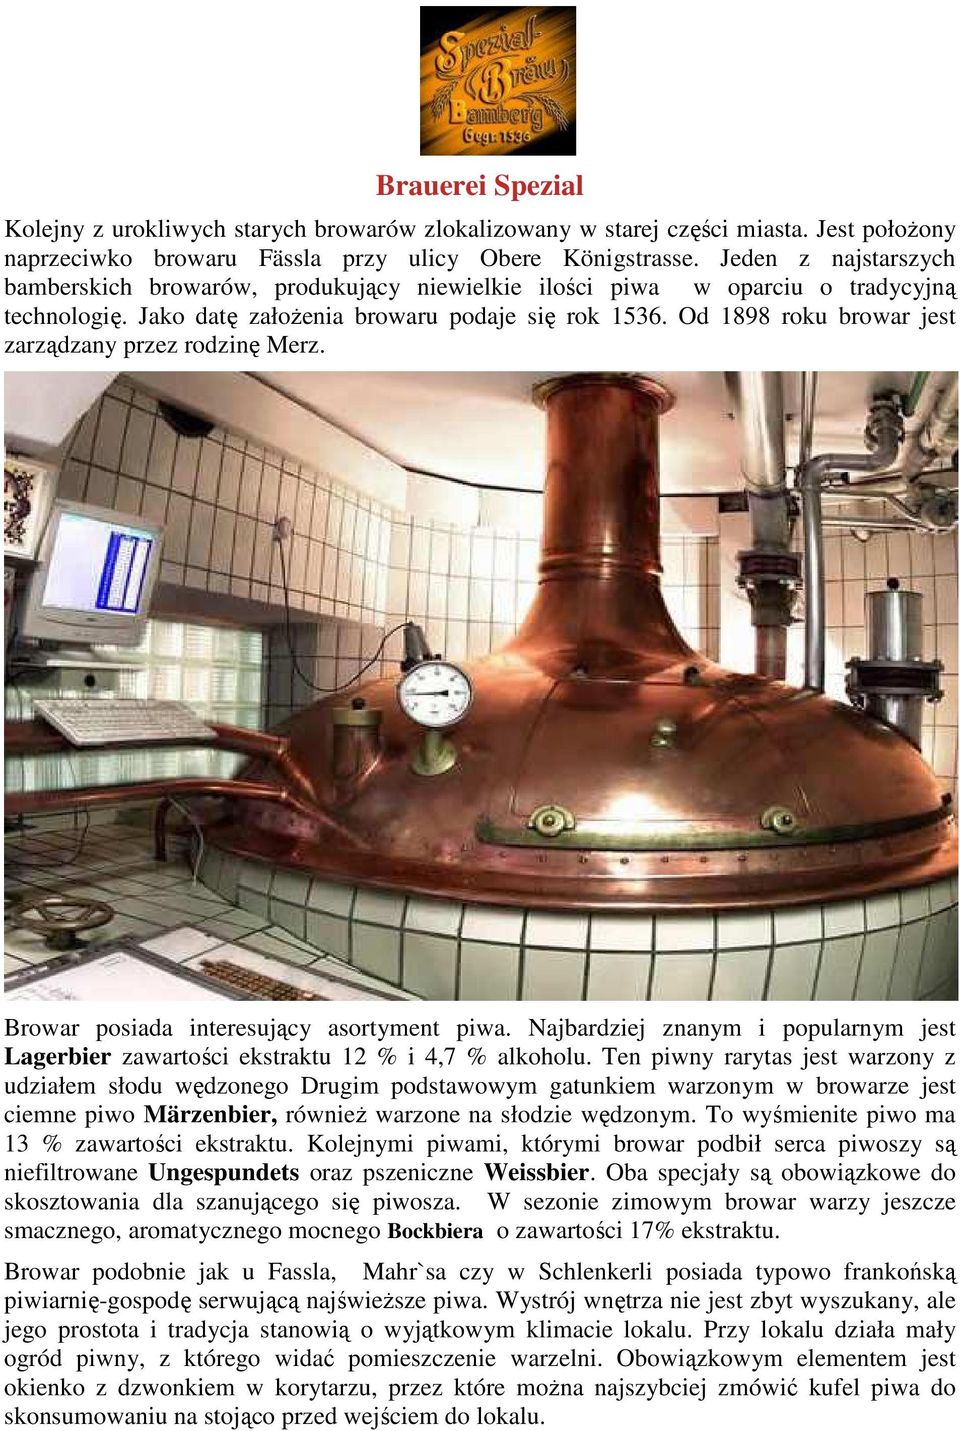 Od 1898 roku browar jest zarządzany przez rodzinę Merz. Browar posiada interesujący asortyment piwa. Najbardziej znanym i popularnym jest Lagerbier zawartości ekstraktu 12 % i 4,7 % alkoholu.